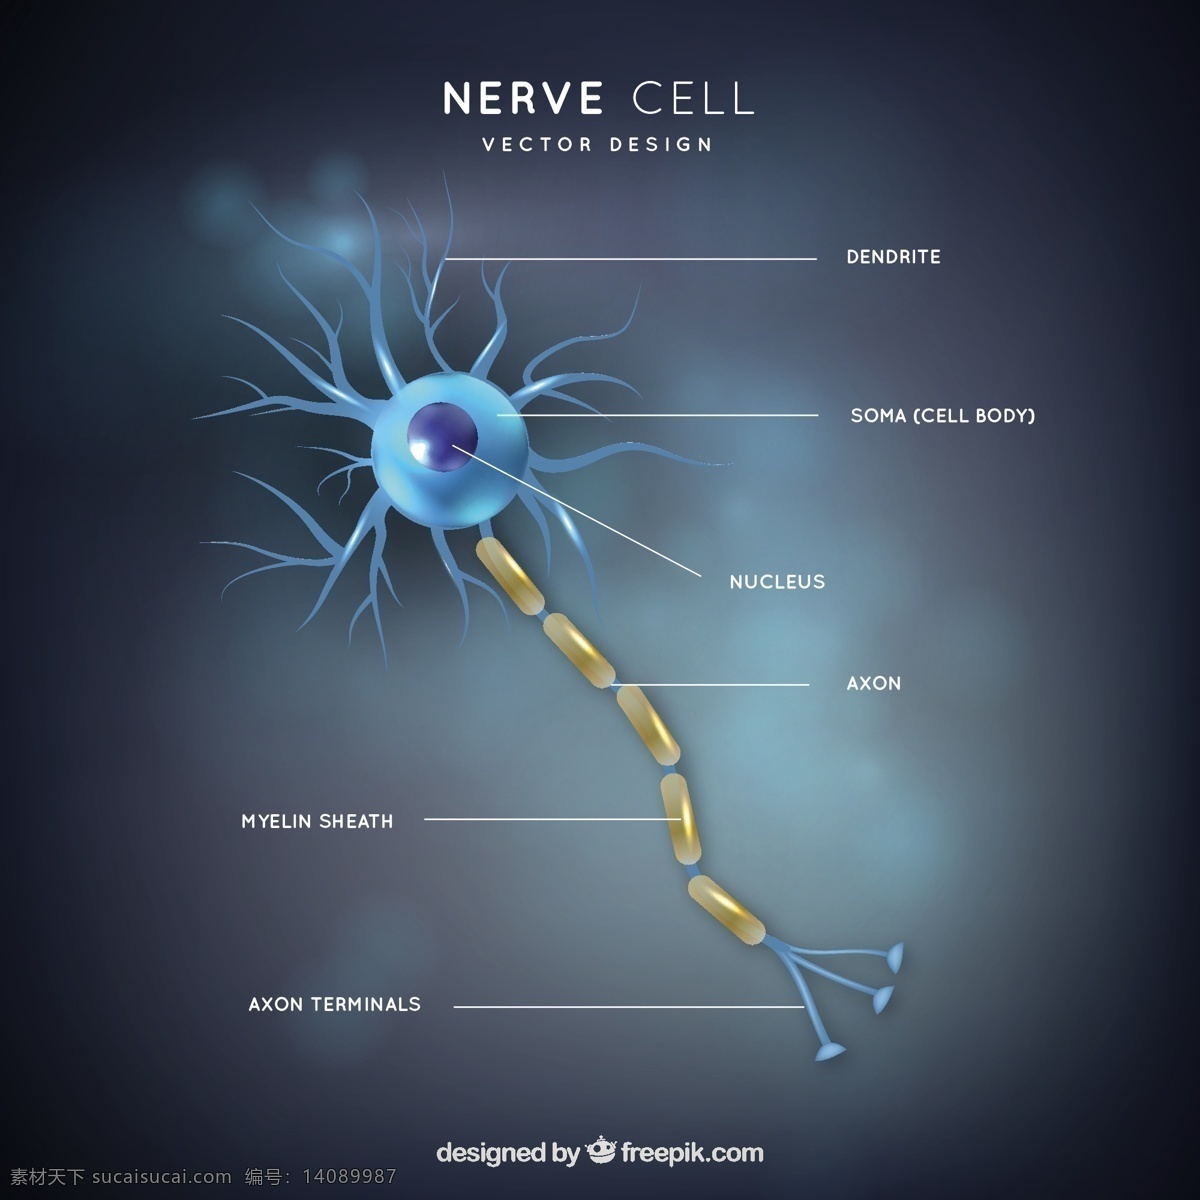 神经元 部分 插图 医学 科学 人类 化学 生物学 分子 显微镜 细胞 神经 微生物学 生理学 核 黑色